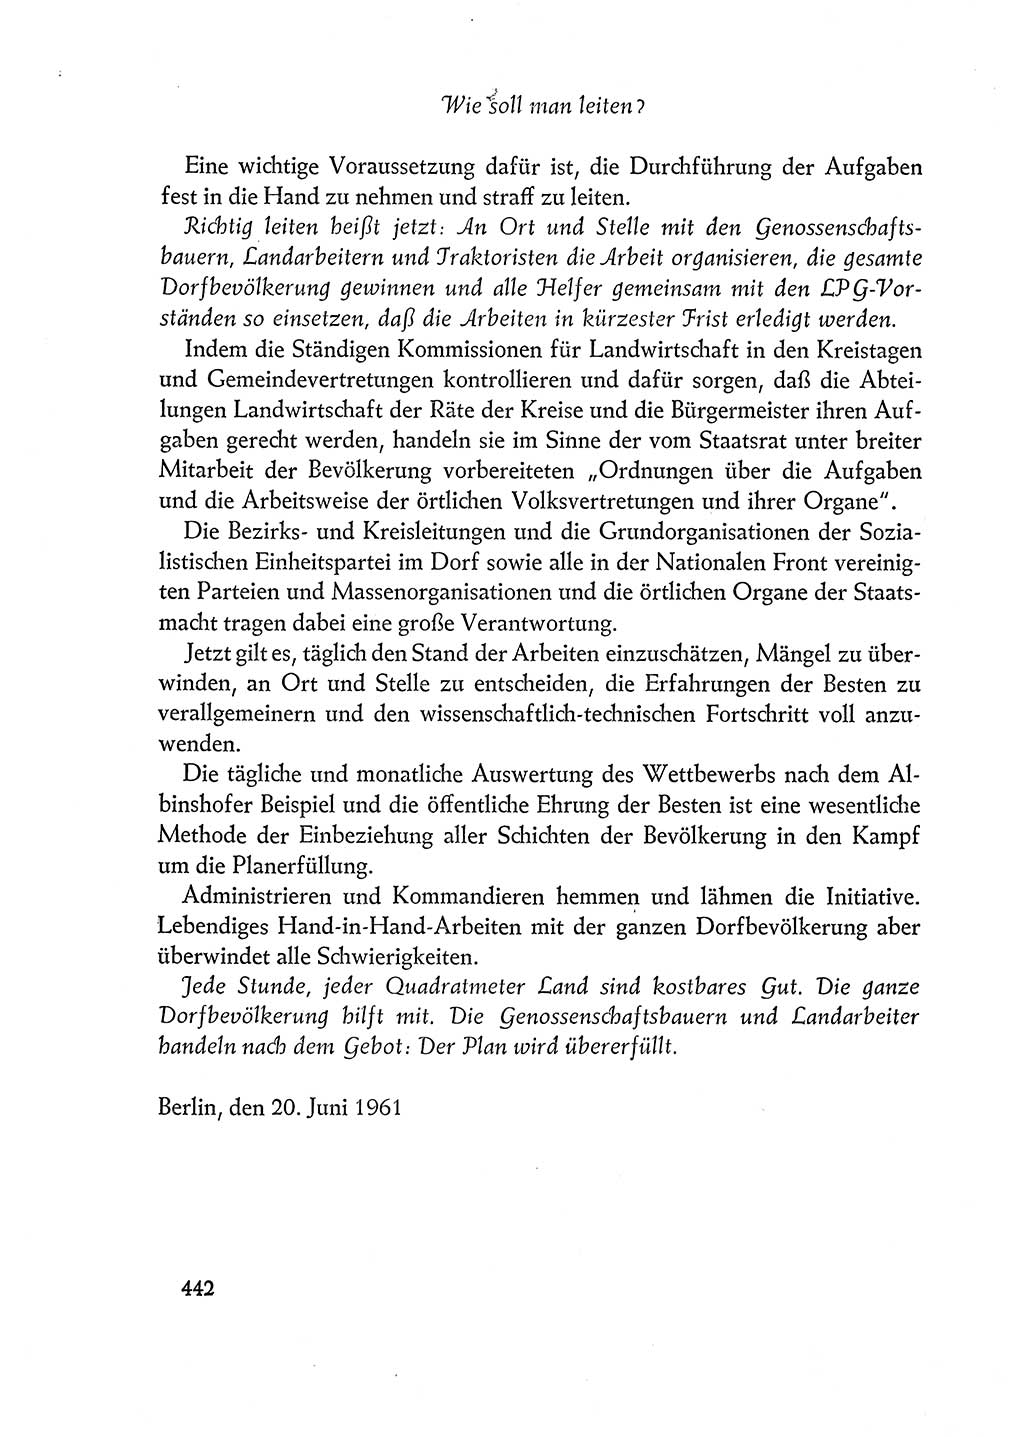 Dokumente der Sozialistischen Einheitspartei Deutschlands (SED) [Deutsche Demokratische Republik (DDR)] 1960-1961, Seite 442 (Dok. SED DDR 1960-1961, S. 442)